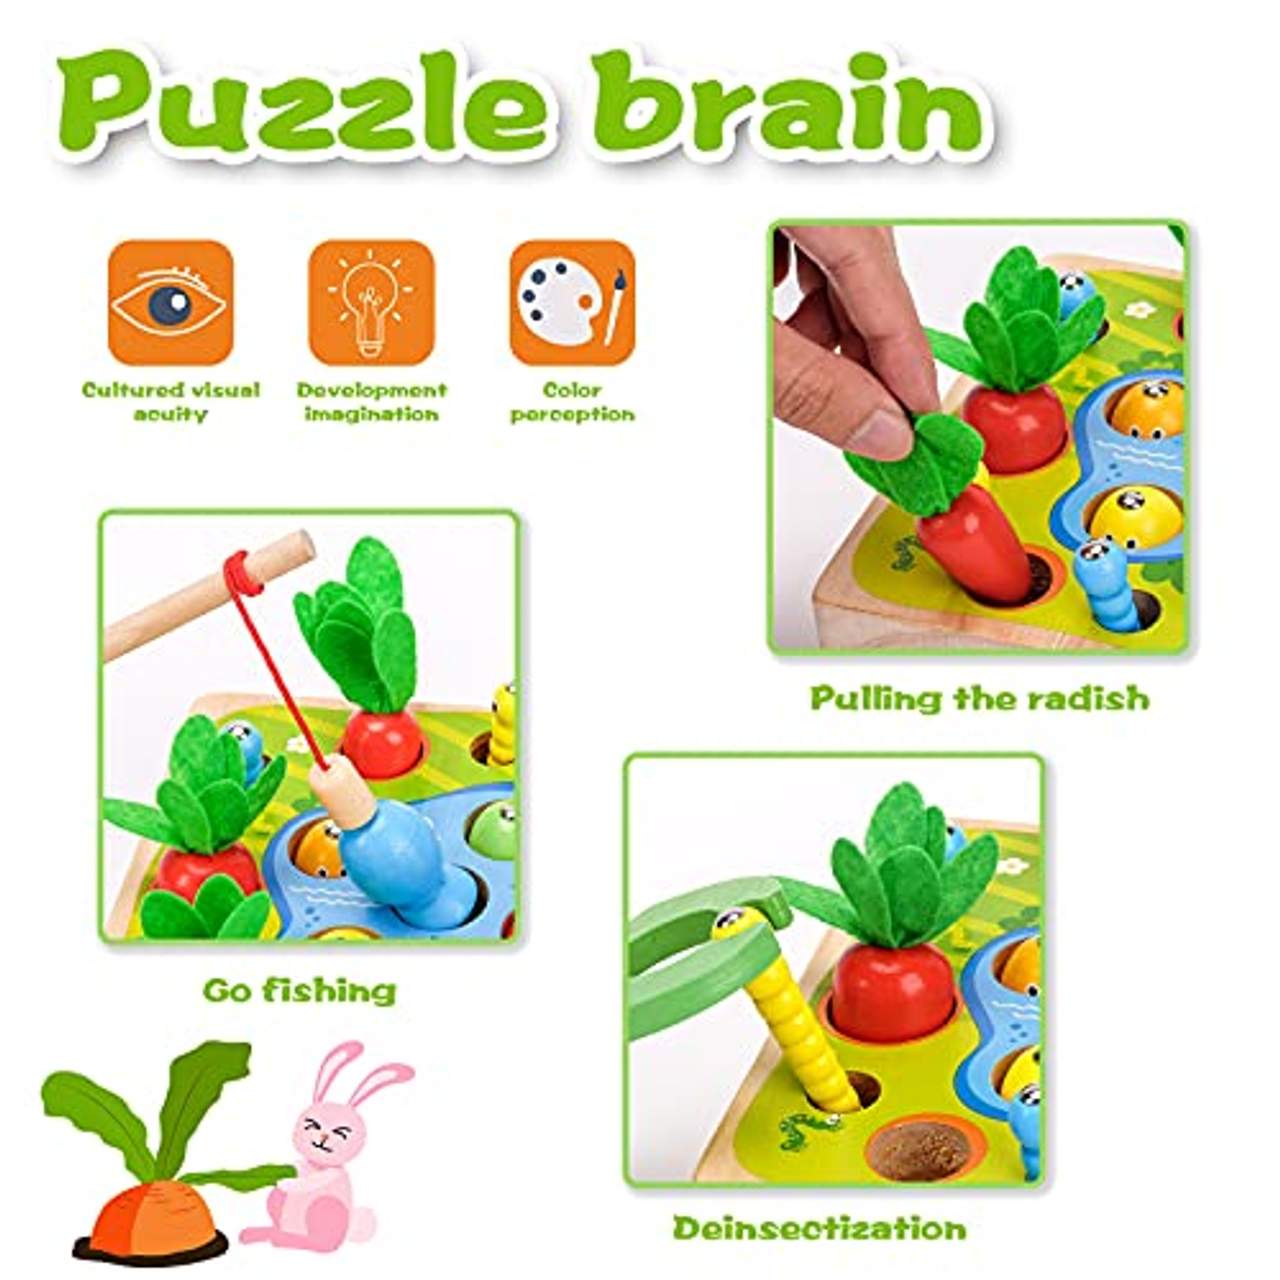 Dream Fun Holzspielzeug für Baby Kinder Montessori